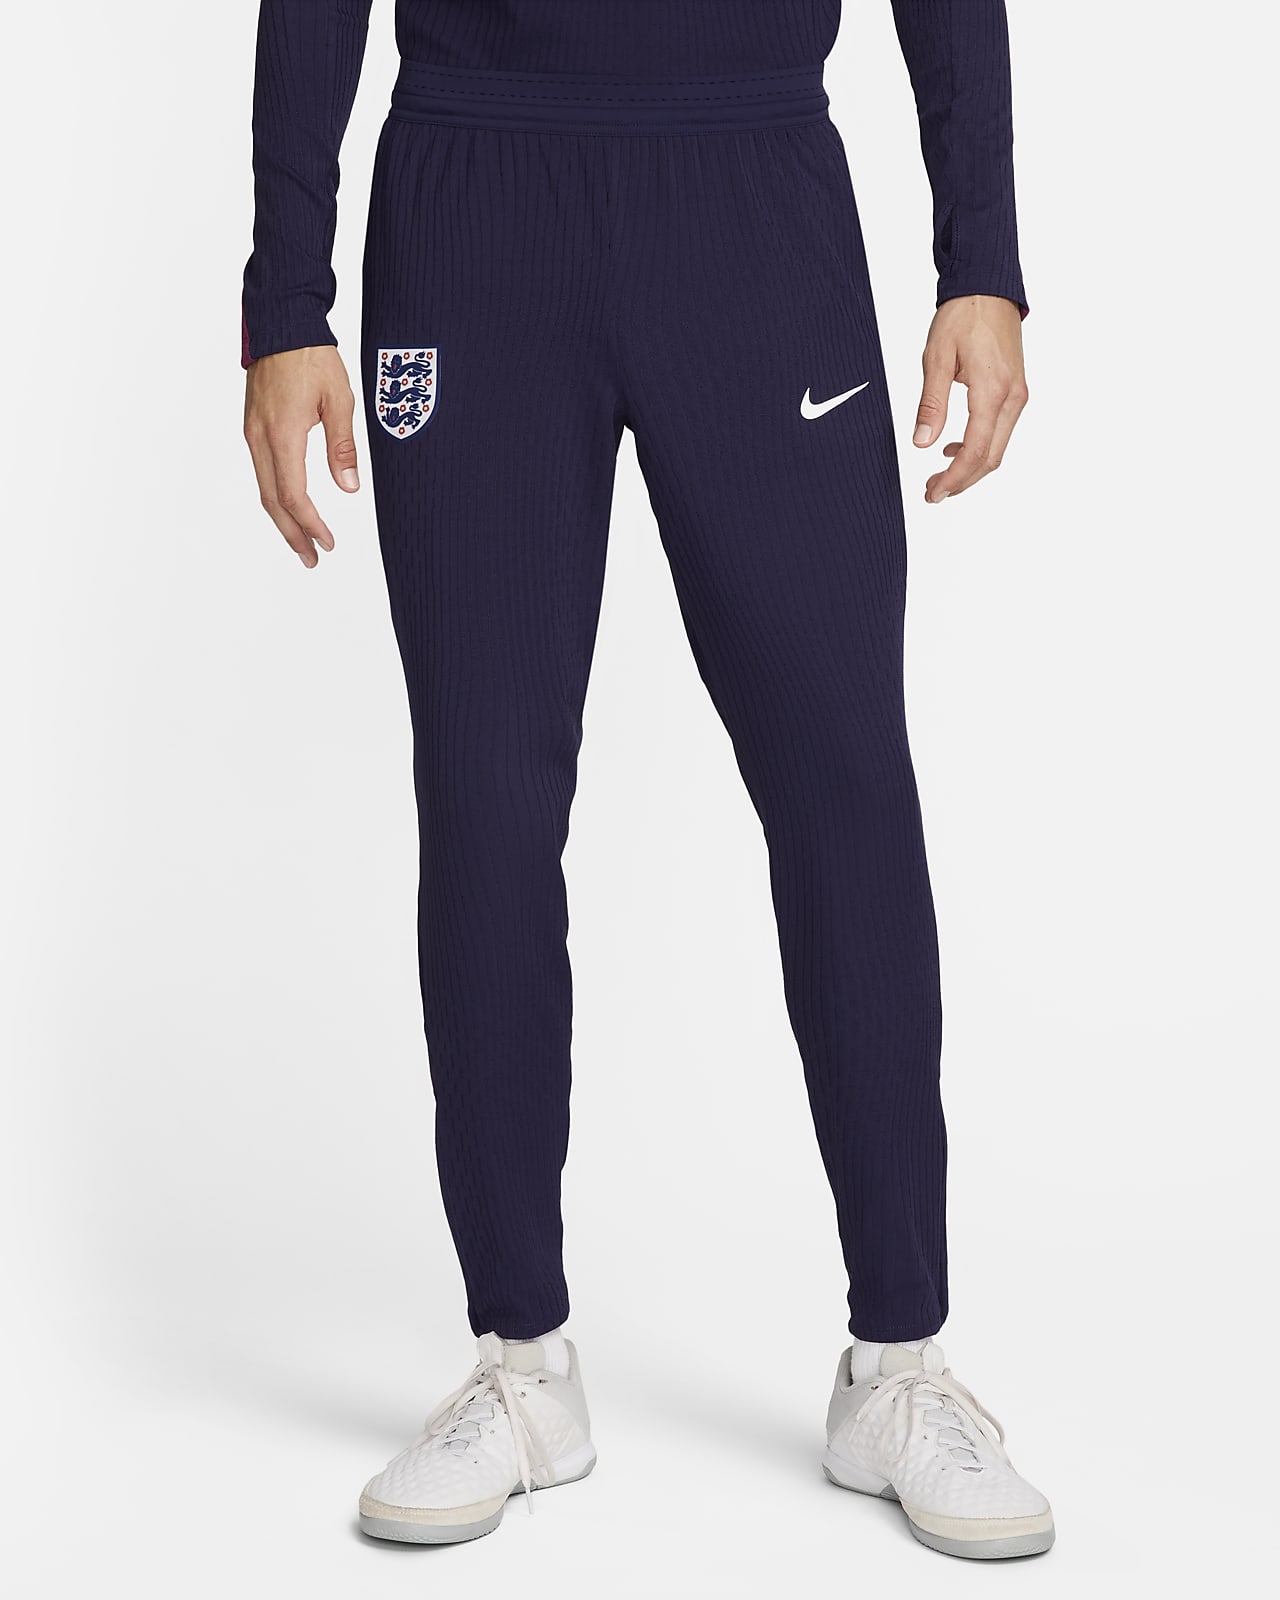 England Strike Elite Nike Dri-FIT ADV strikket fotballbukse til herre